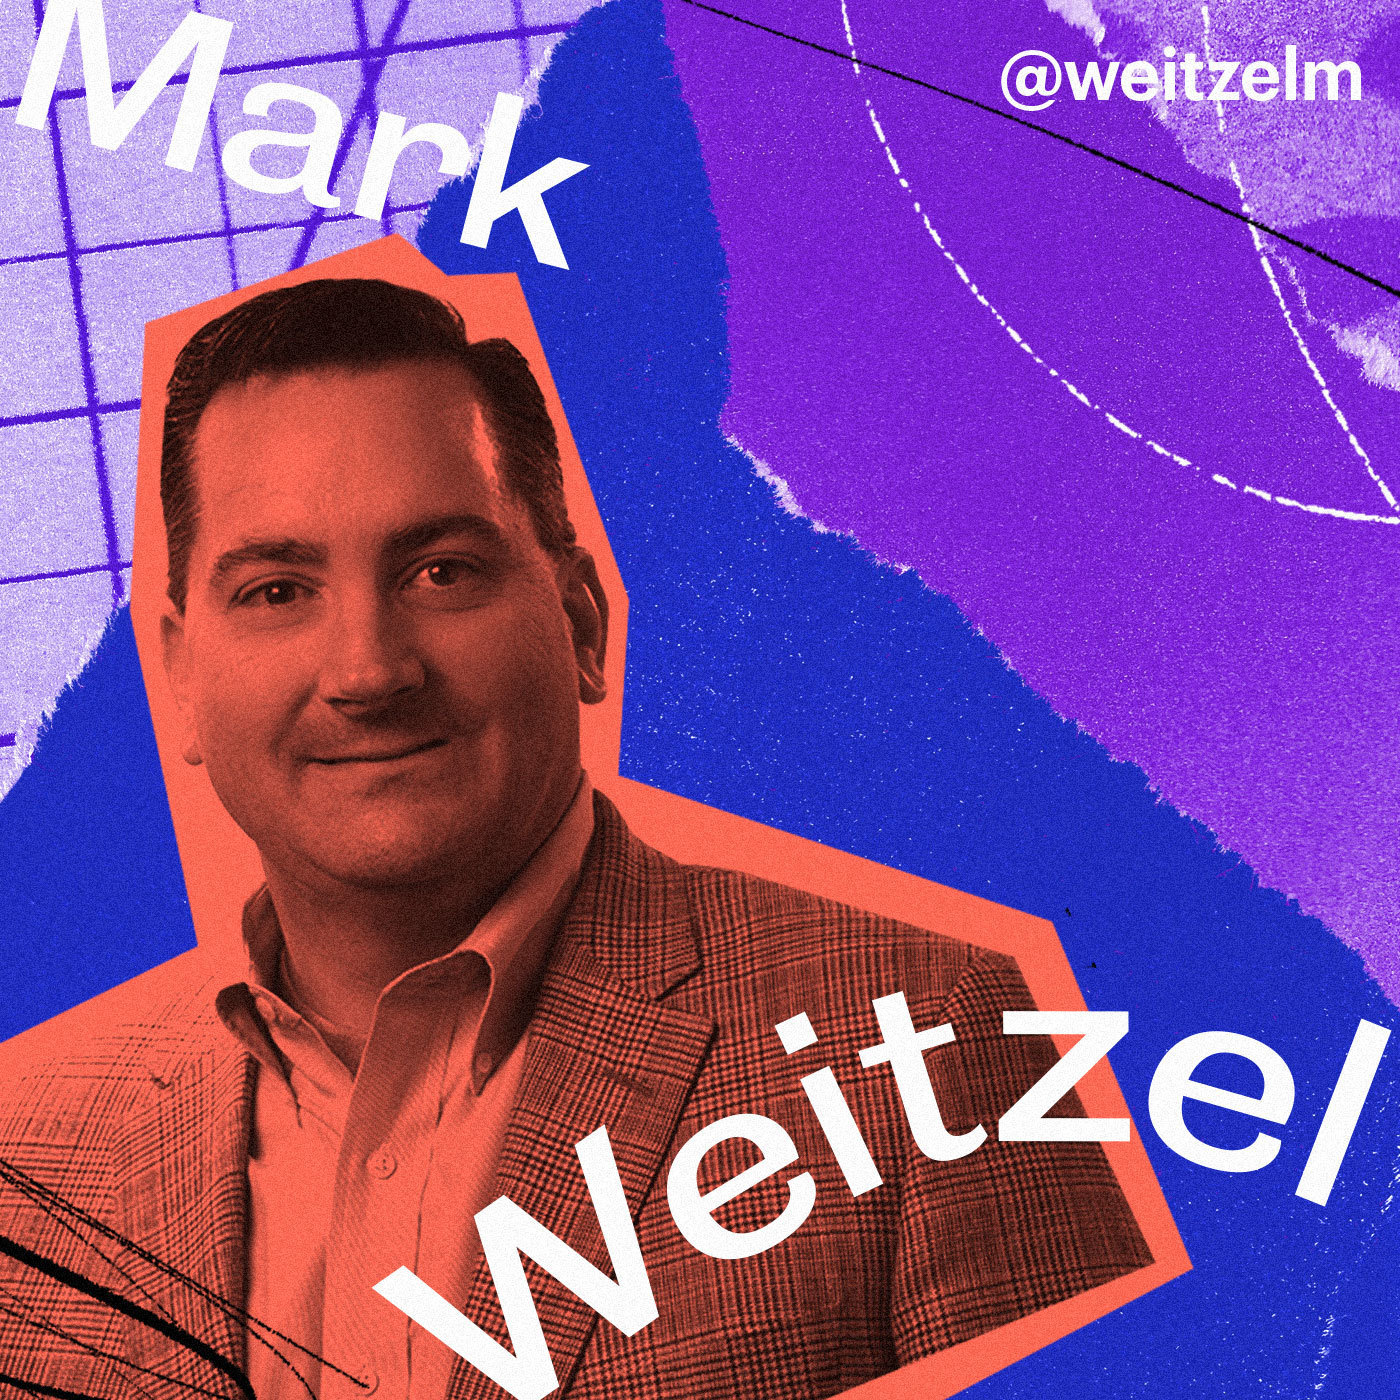 New Relic's Mark Weitzel on creating open developer communities